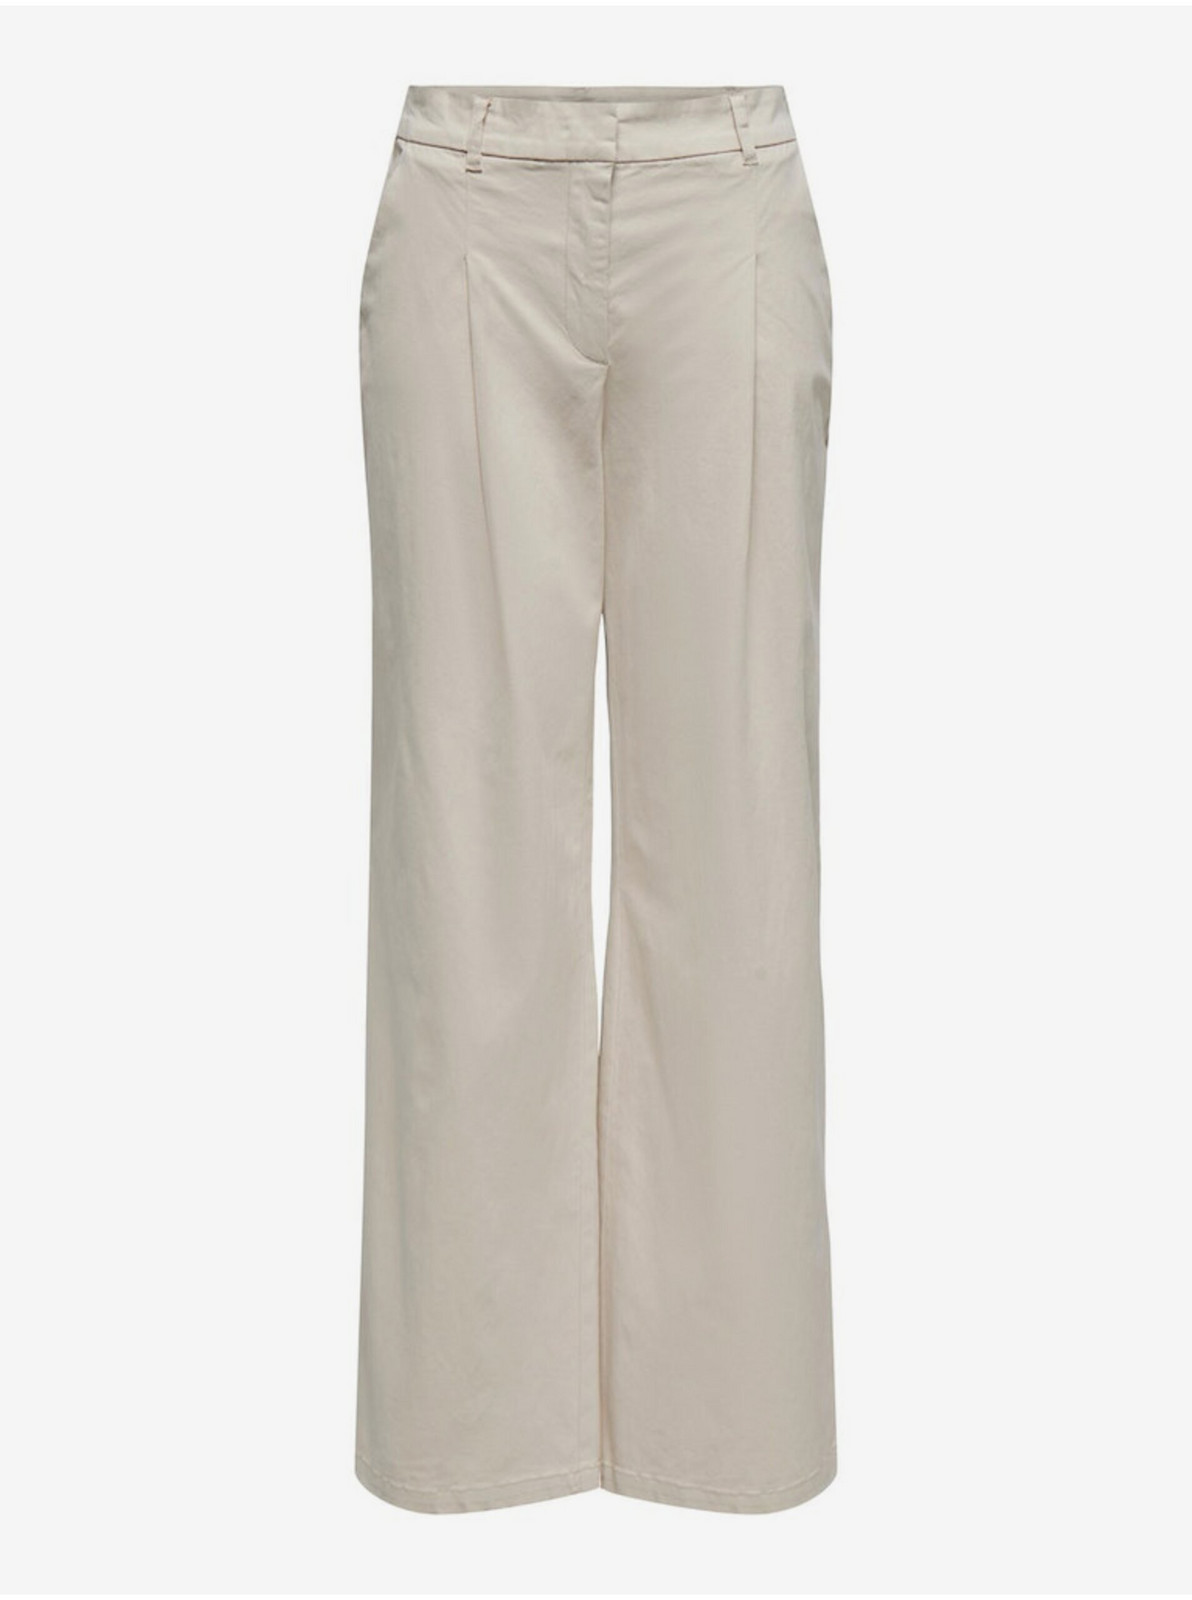 Béžové dámské kalhoty ONLY Stella - Dámské